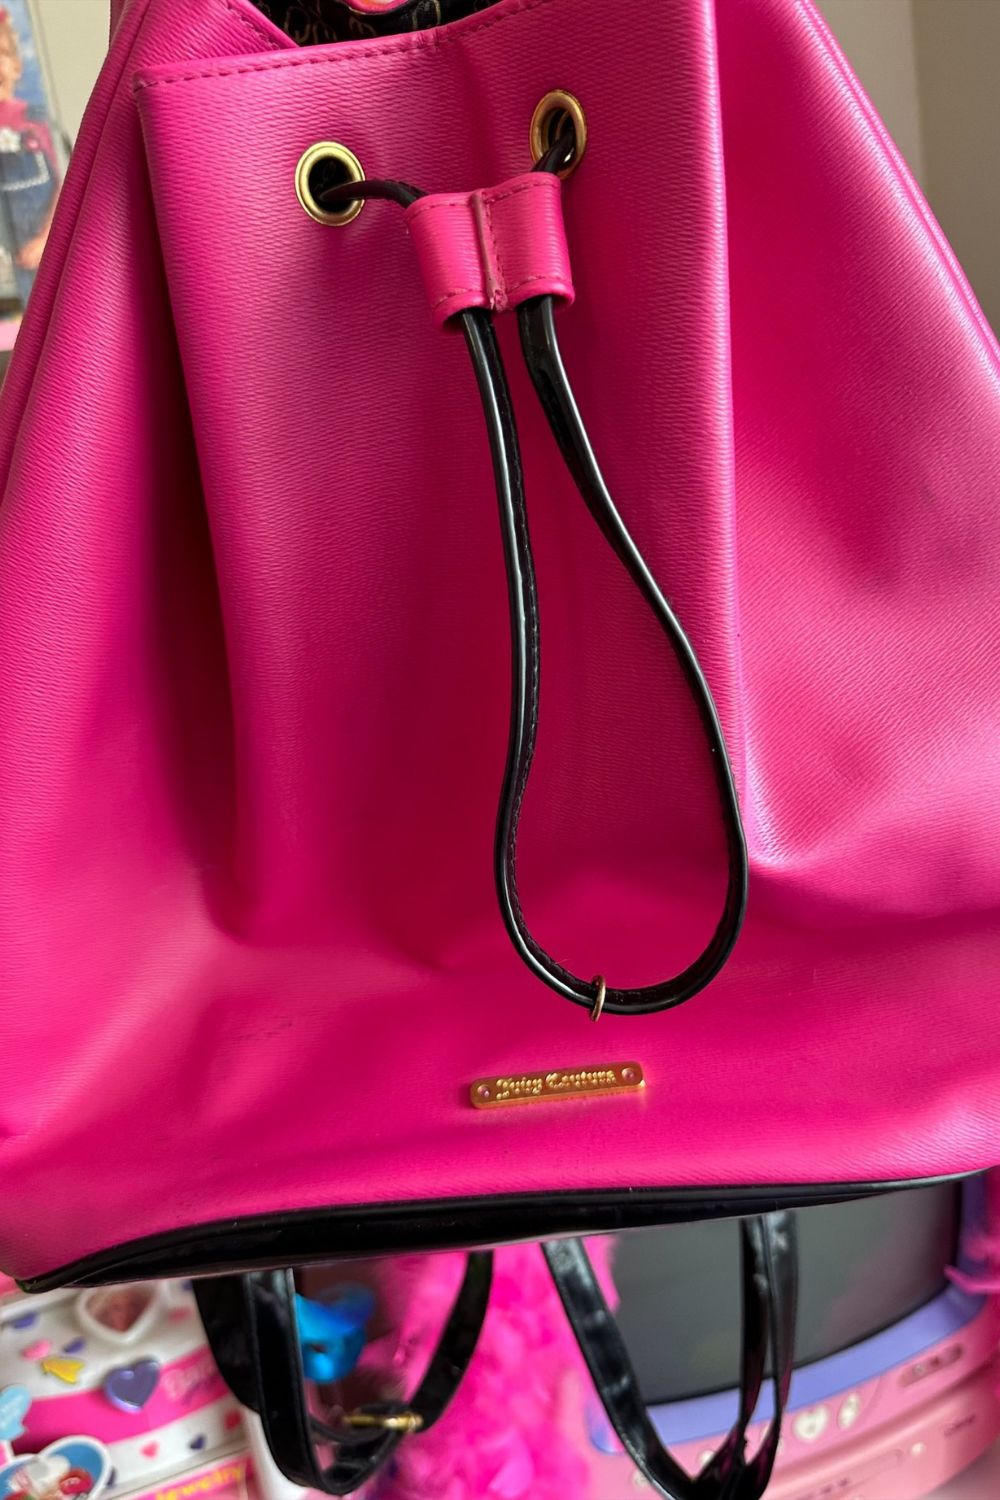 Buy Women's Aspen Backpack Handbag Online at desertcartINDIA